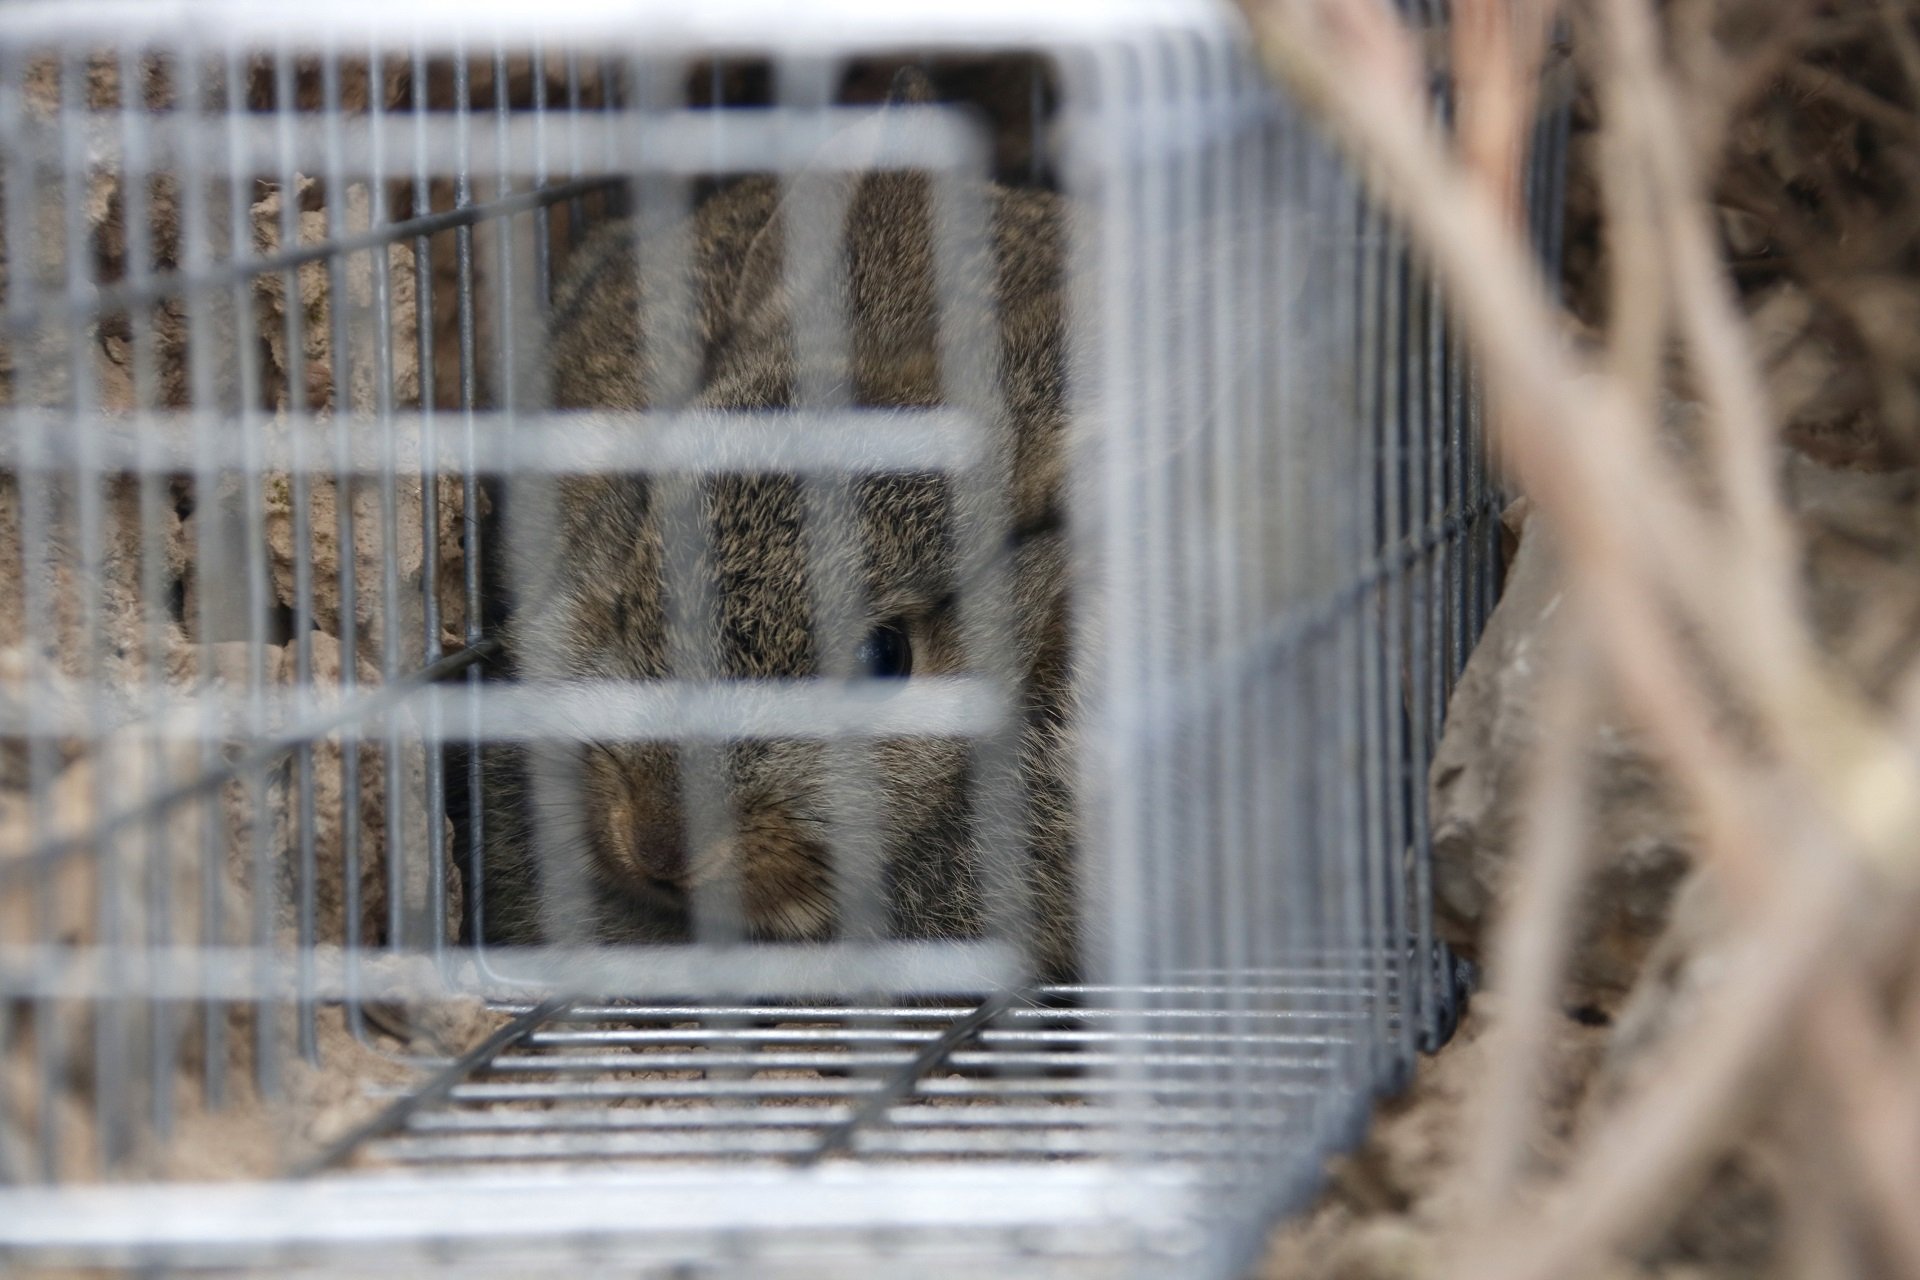 Nuevas medidas contra los conejos: colocan jaulas trampa para cazarlos en Tàrrega